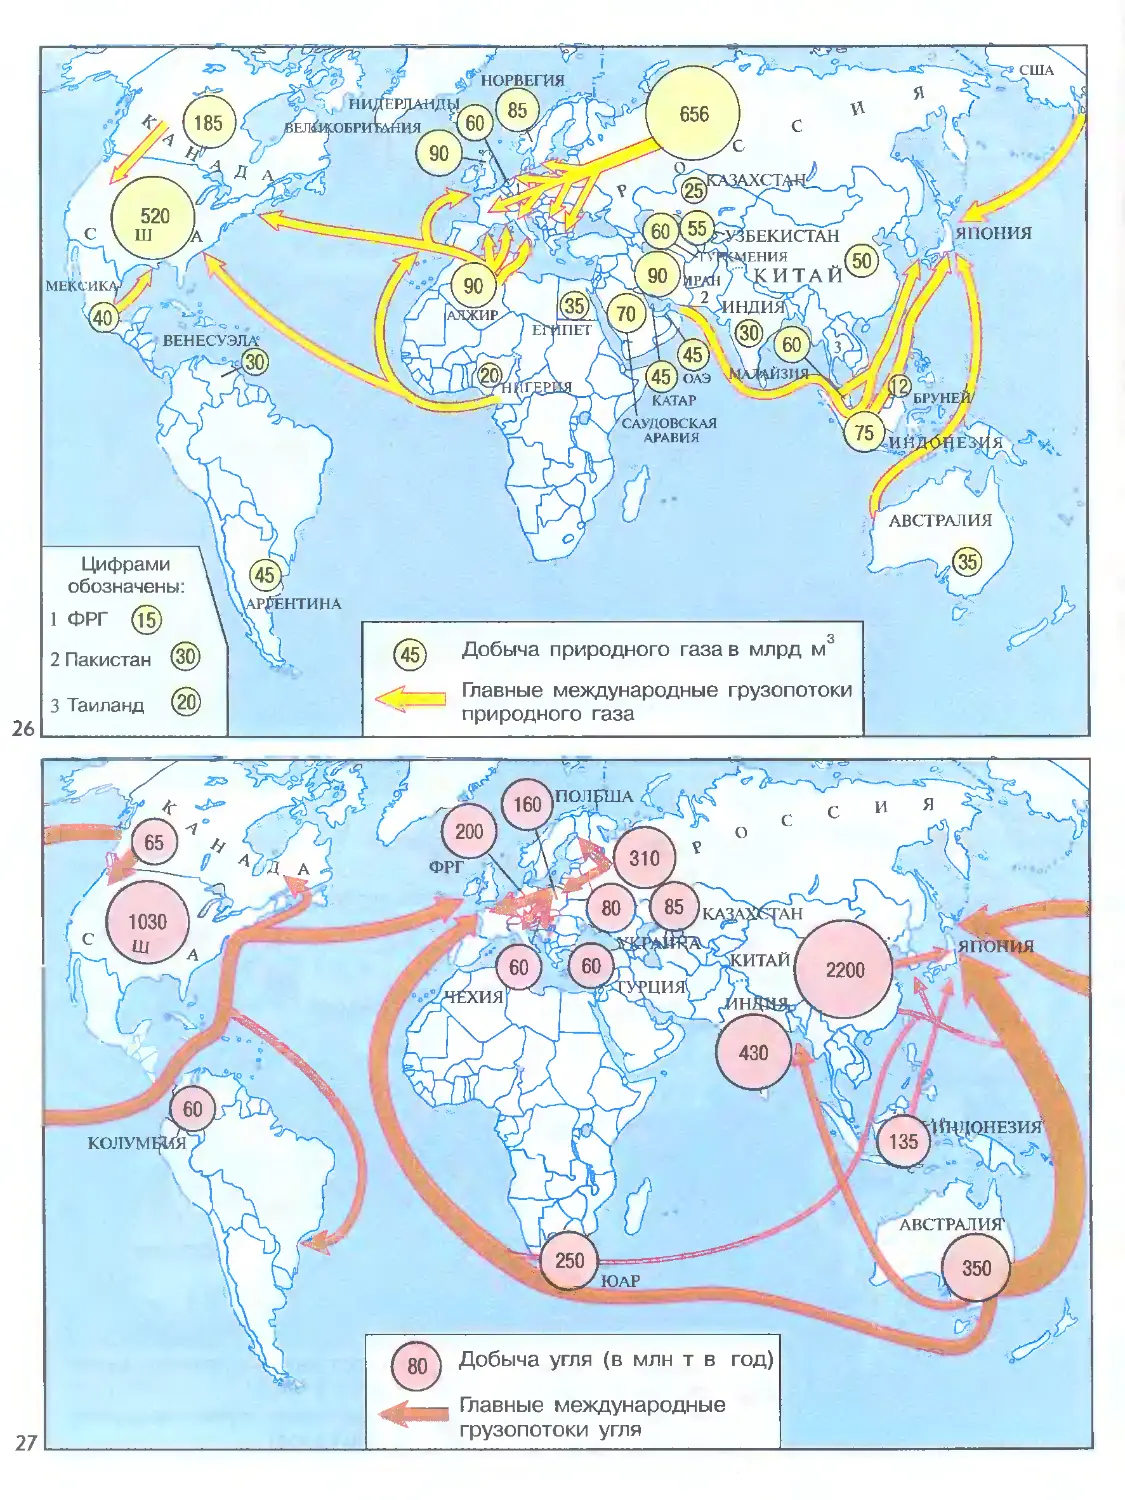 Главные страны импорта продукции важные грузопотоки. Грузопотоки природного газа в мире. Основные направления экспорта нефти газа и угля на карте. Основные грузопотоки нефти газа угля в мире.